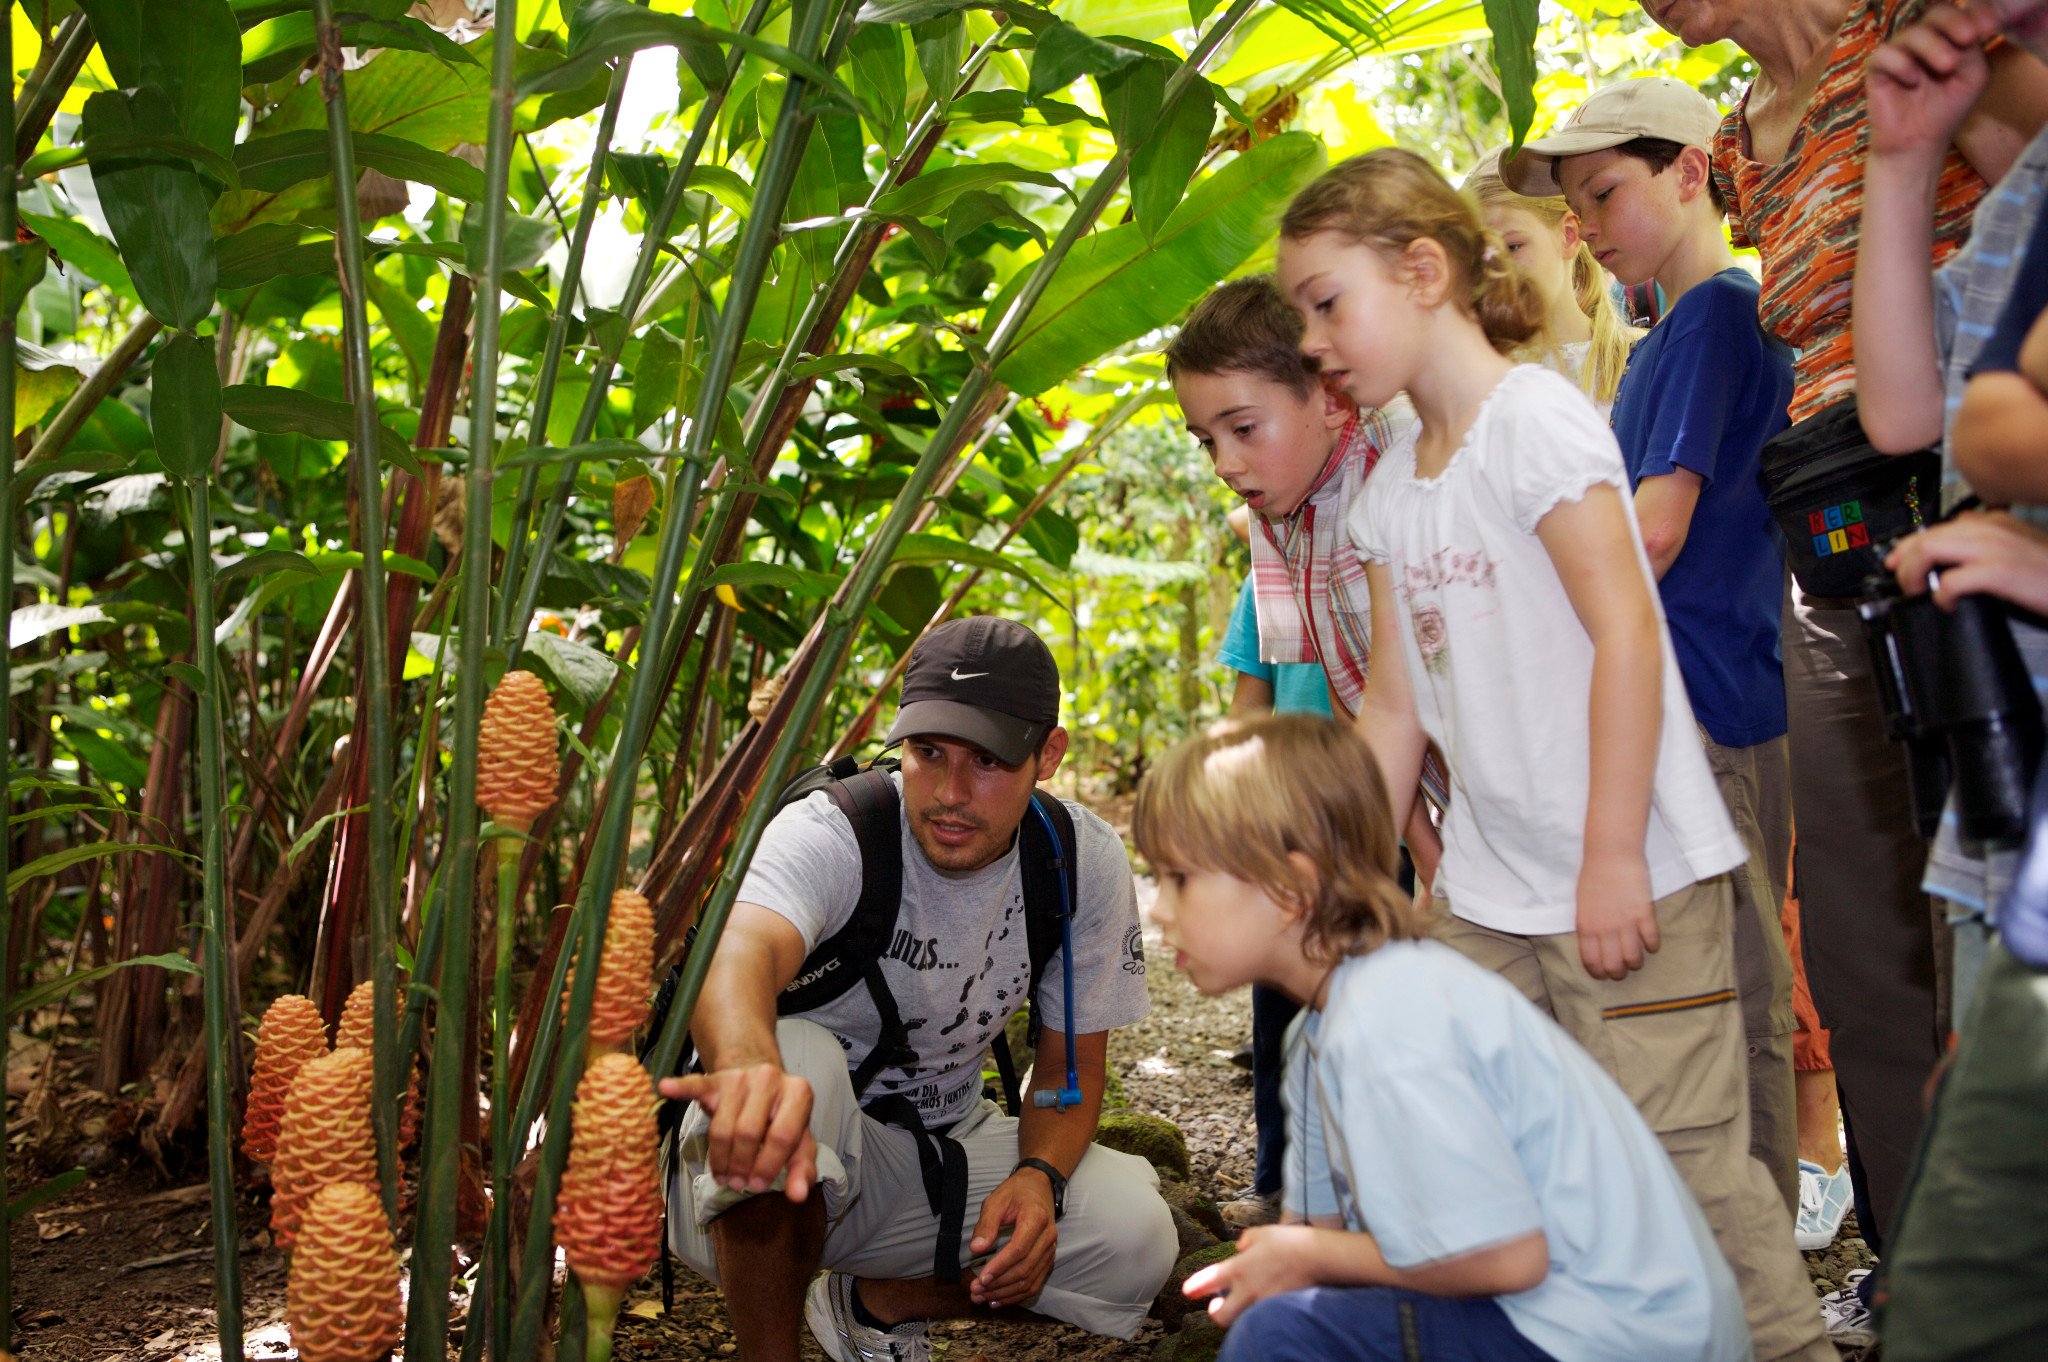 10 Jahre Reiseveranstalter For Family Reisen - Gruppenreise für Familien in Costa Rica - Kinder bestaunen mit einheimischem Guide Pflanzen in Costa Rica